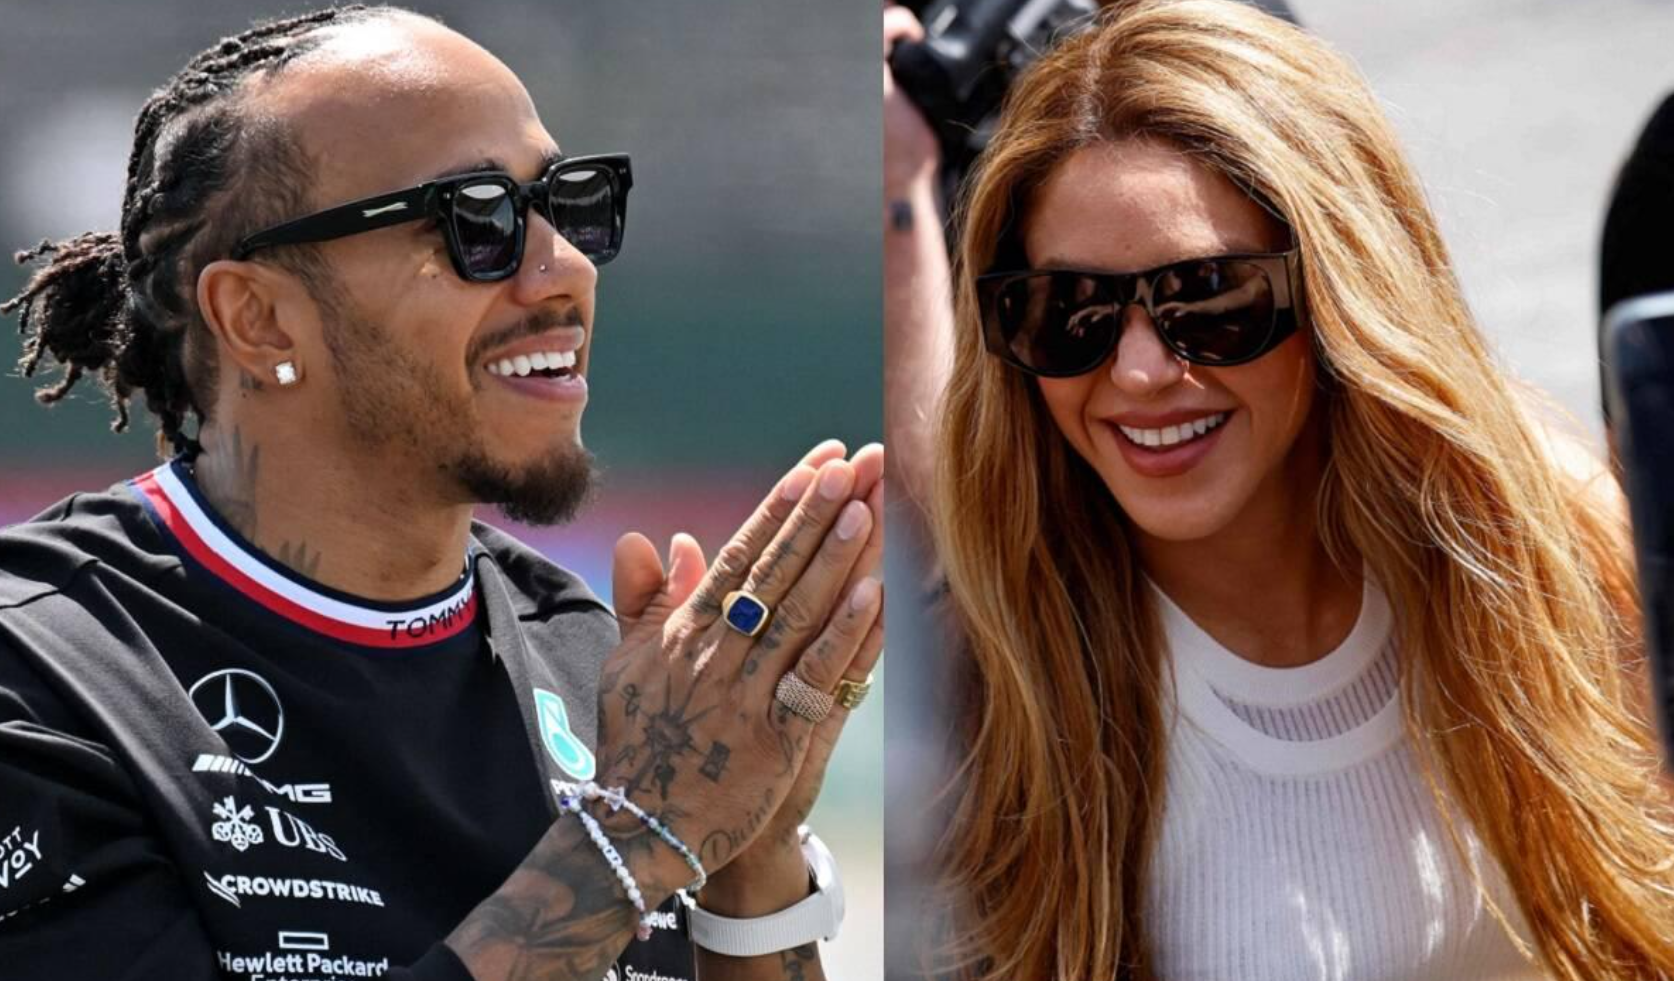 Lewis Hamilton molesto con Shakira por malinterpretación de amistad